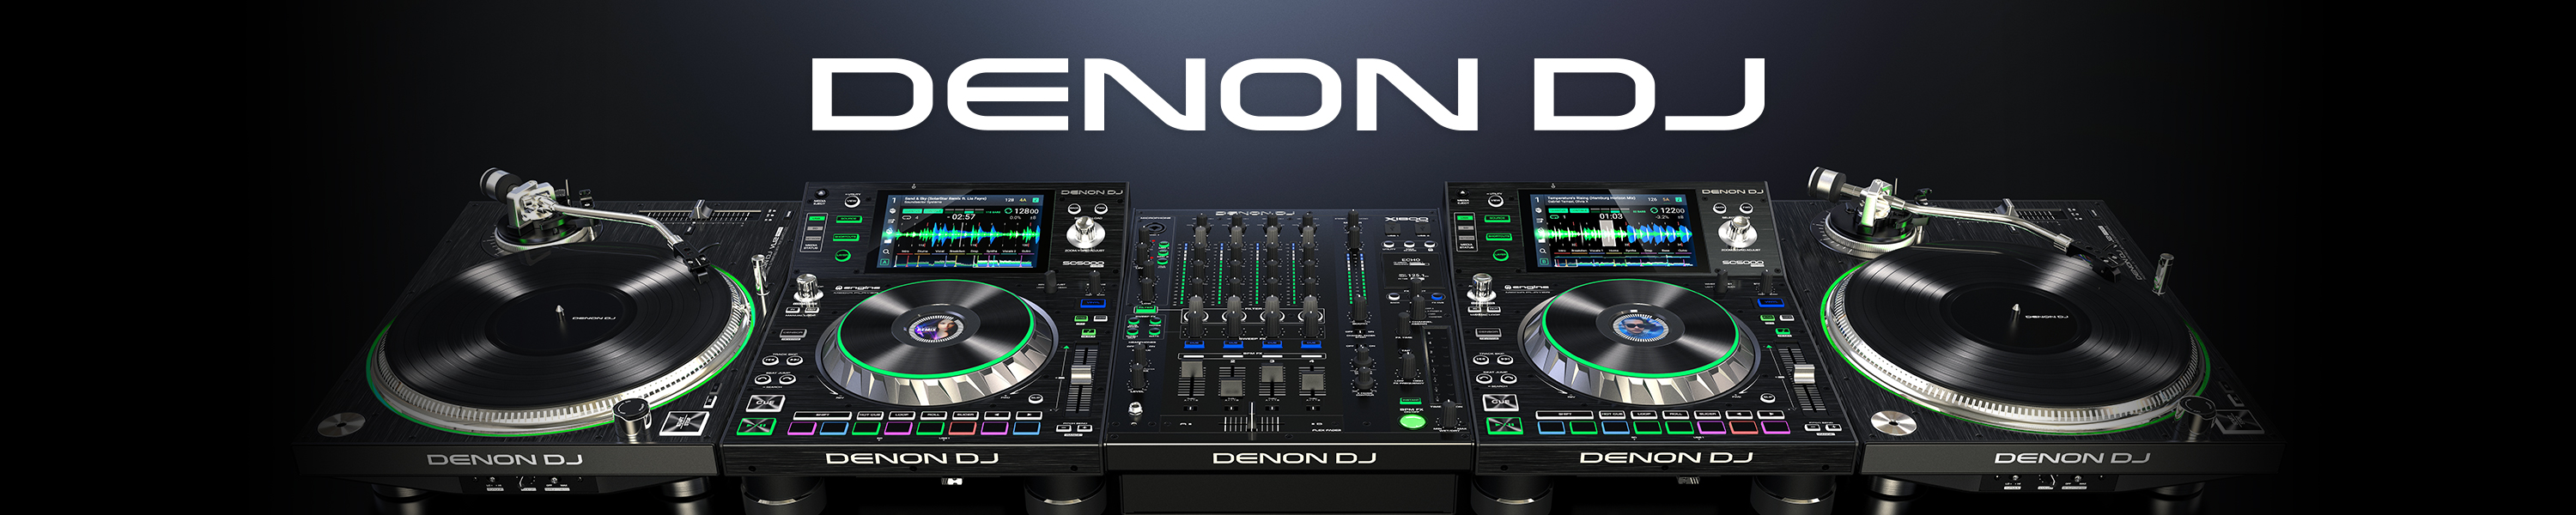 Denon DJ: Turntables